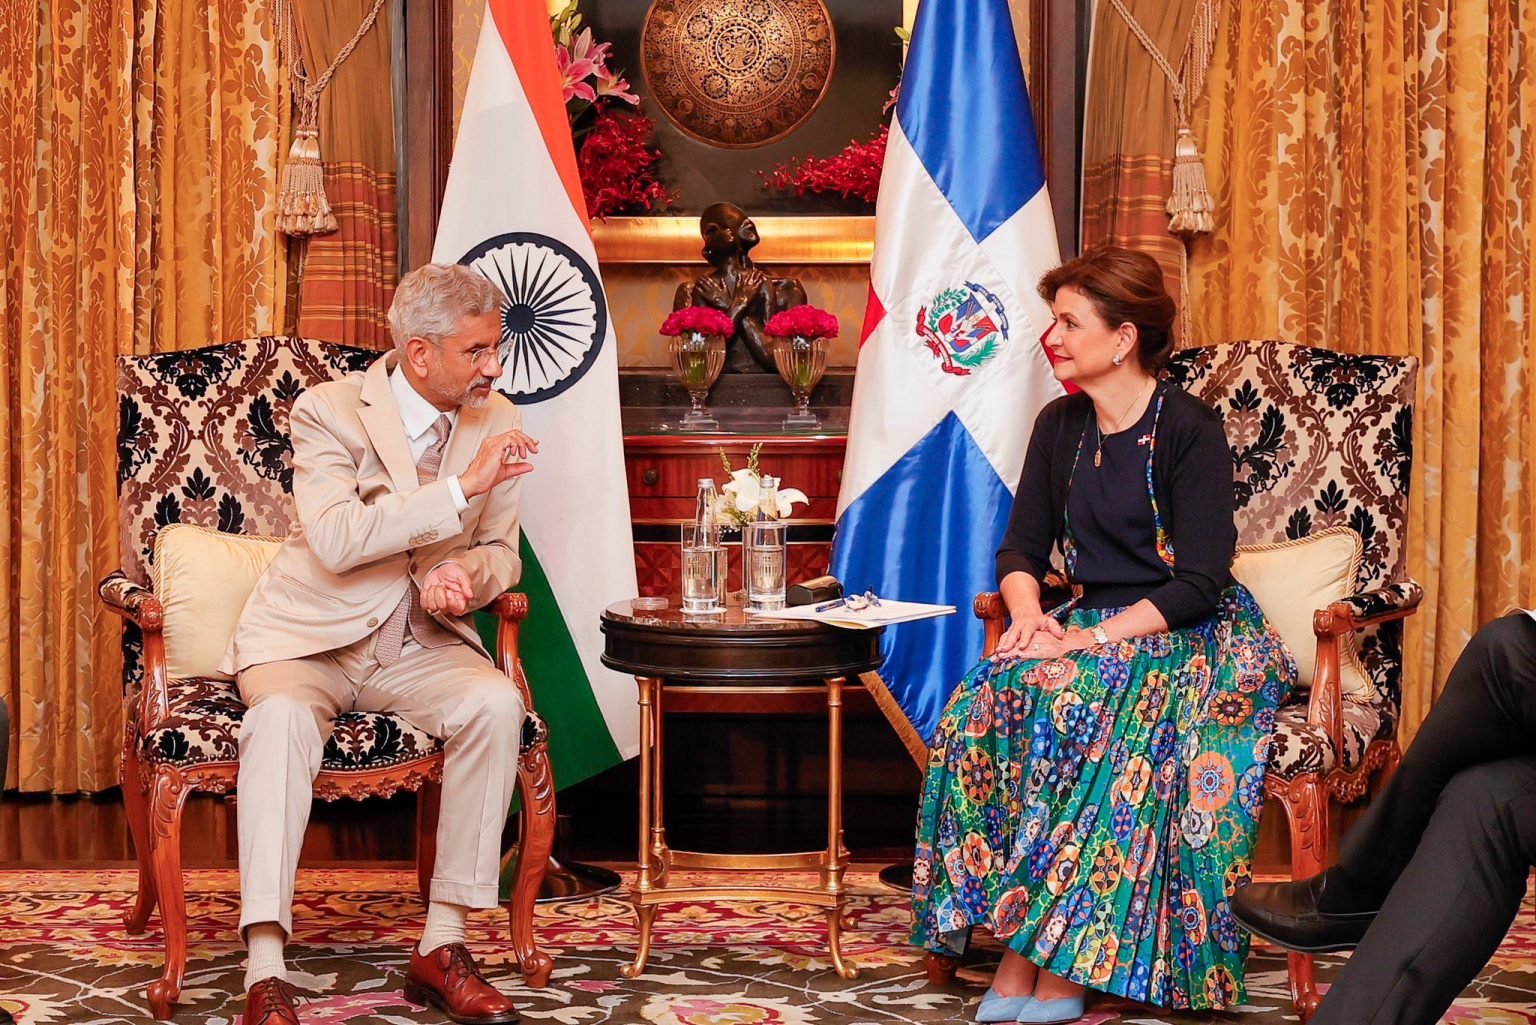 Vicepresidenta Raquel pena llega a la India e inicia de inmediato su agenda